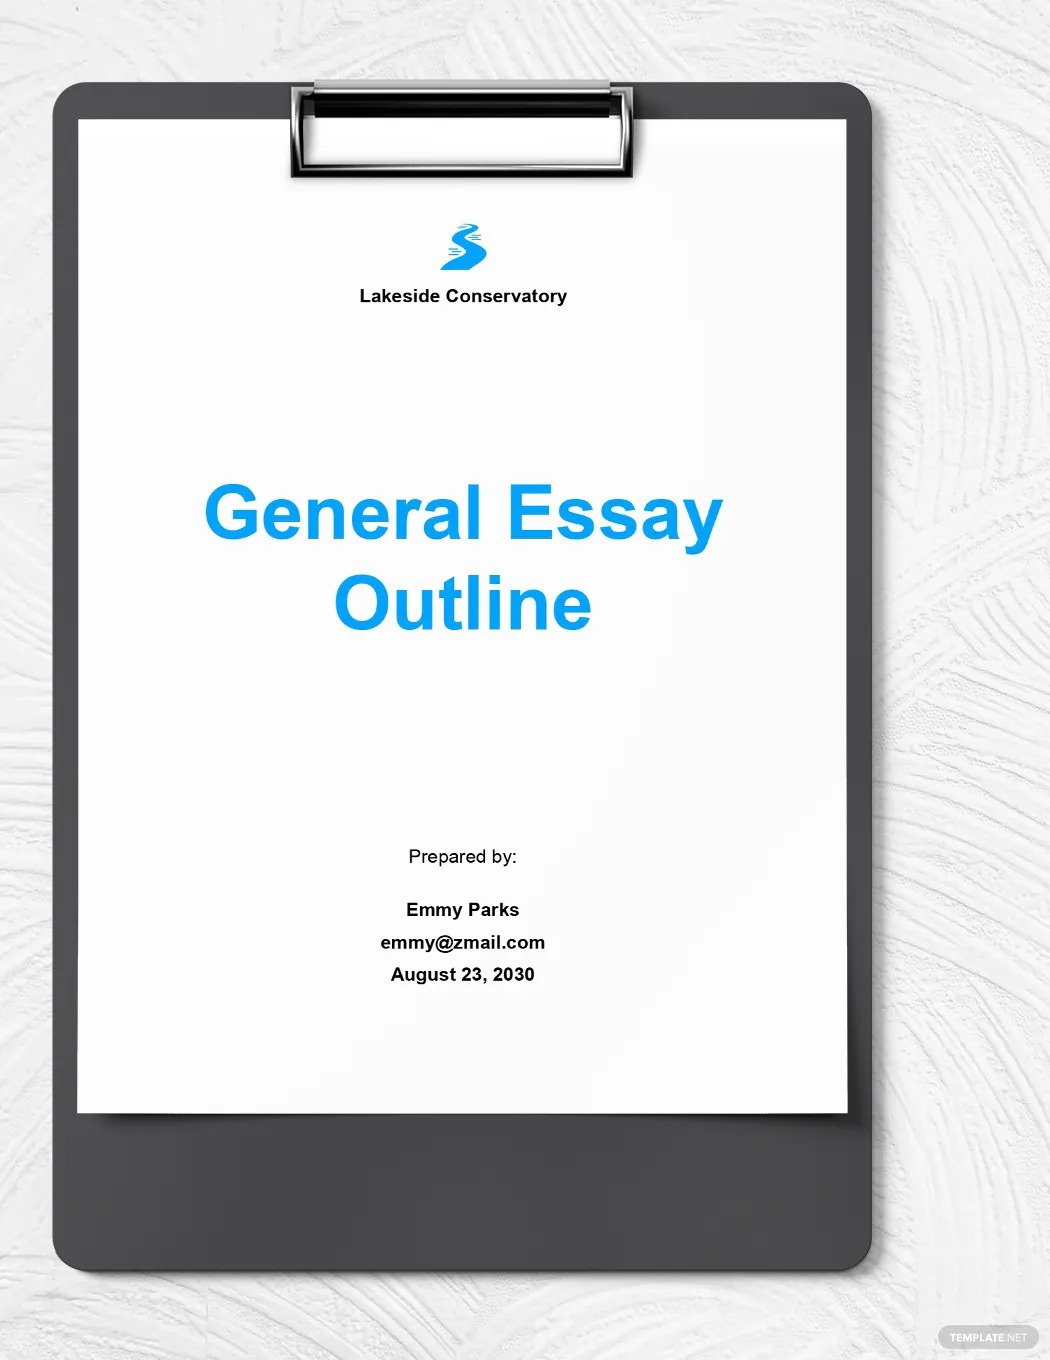 essay outline